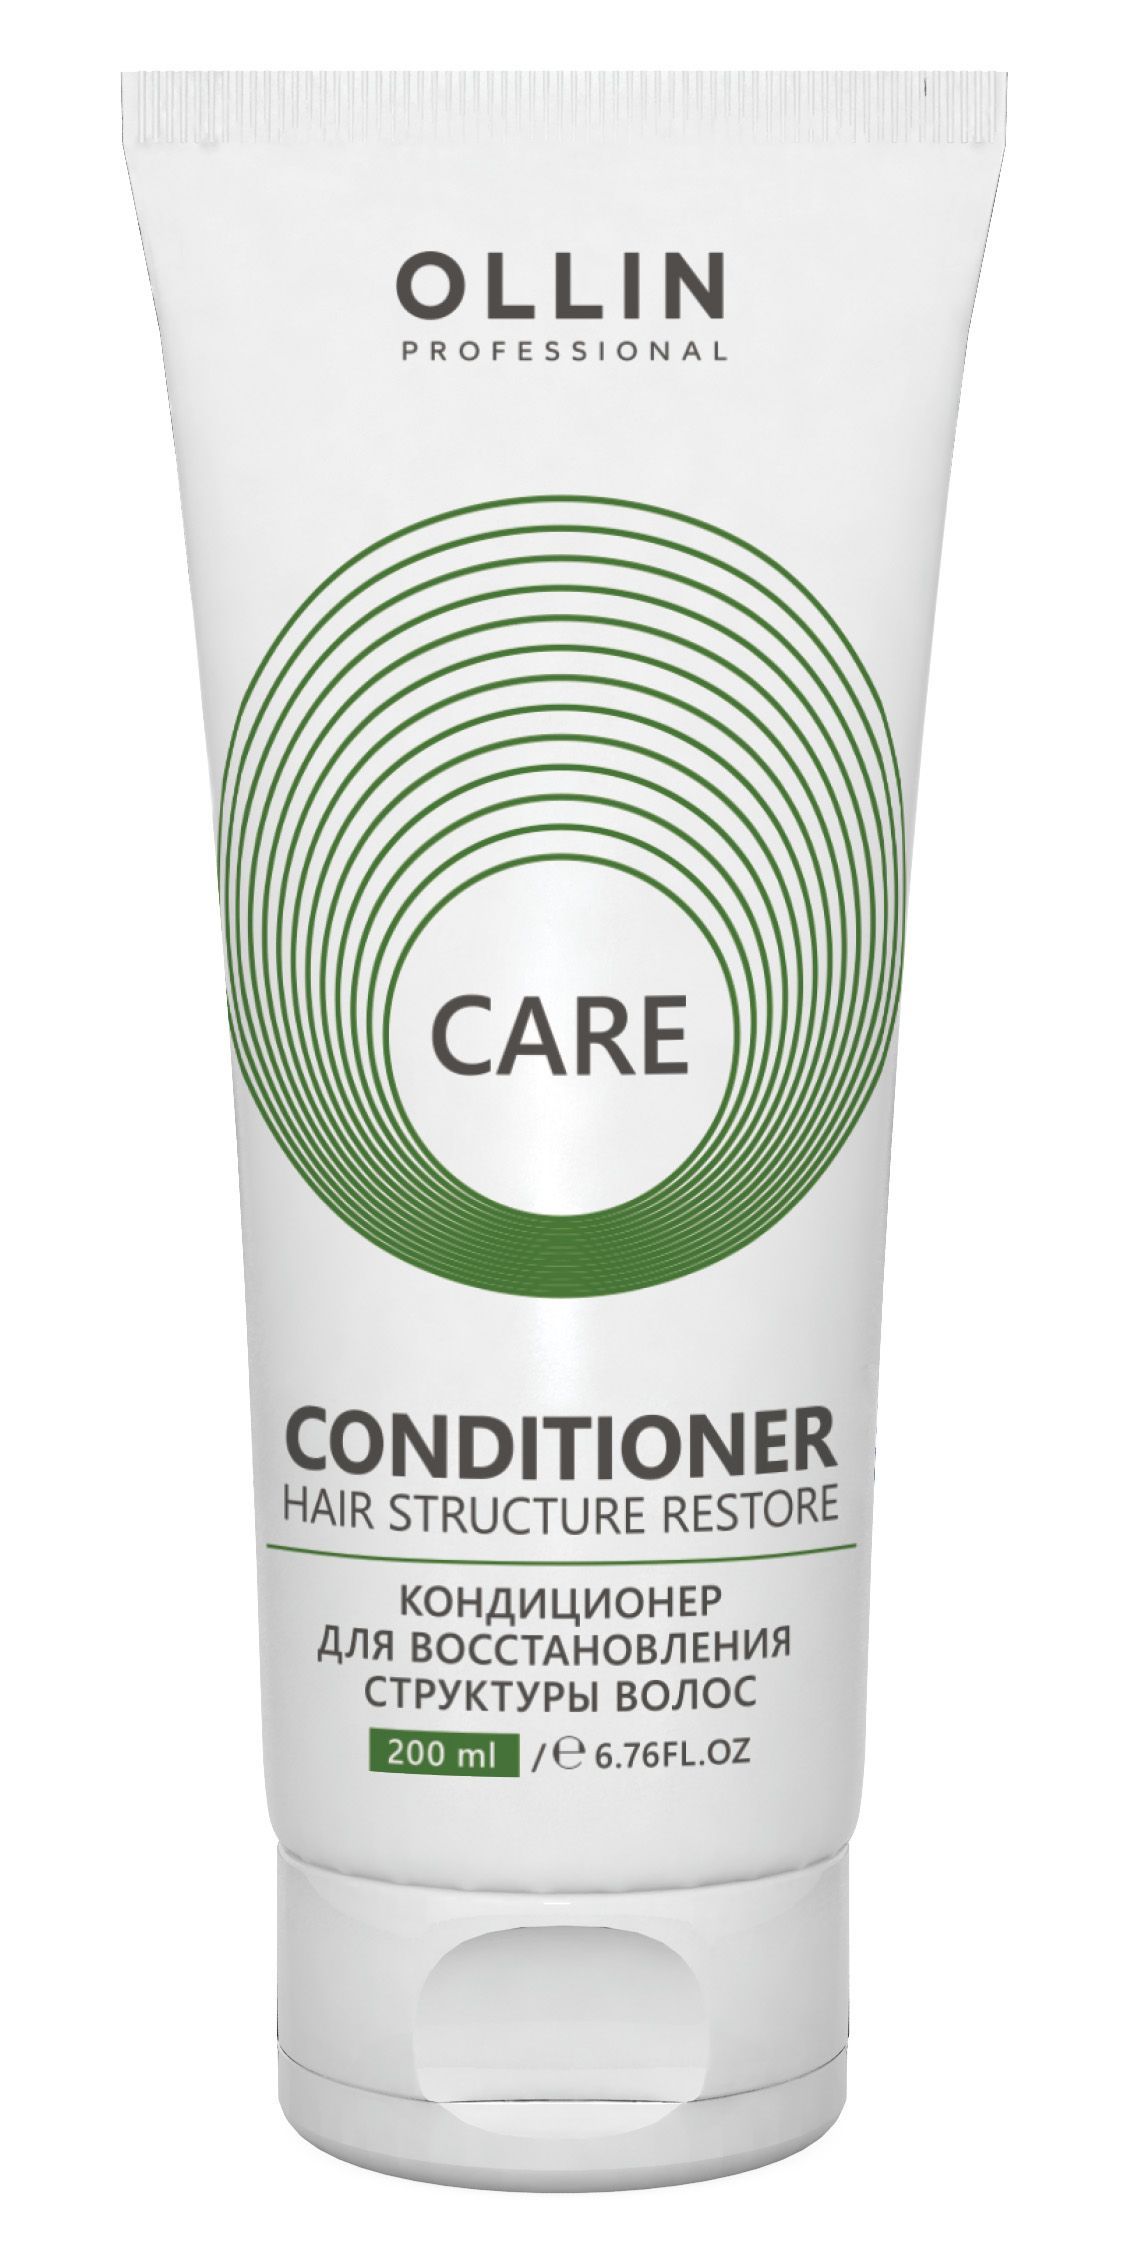 Ollin, Кондиционер для восстановления структуры волос серии «Care», Фото интернет-магазин Премиум-Косметика.РФ